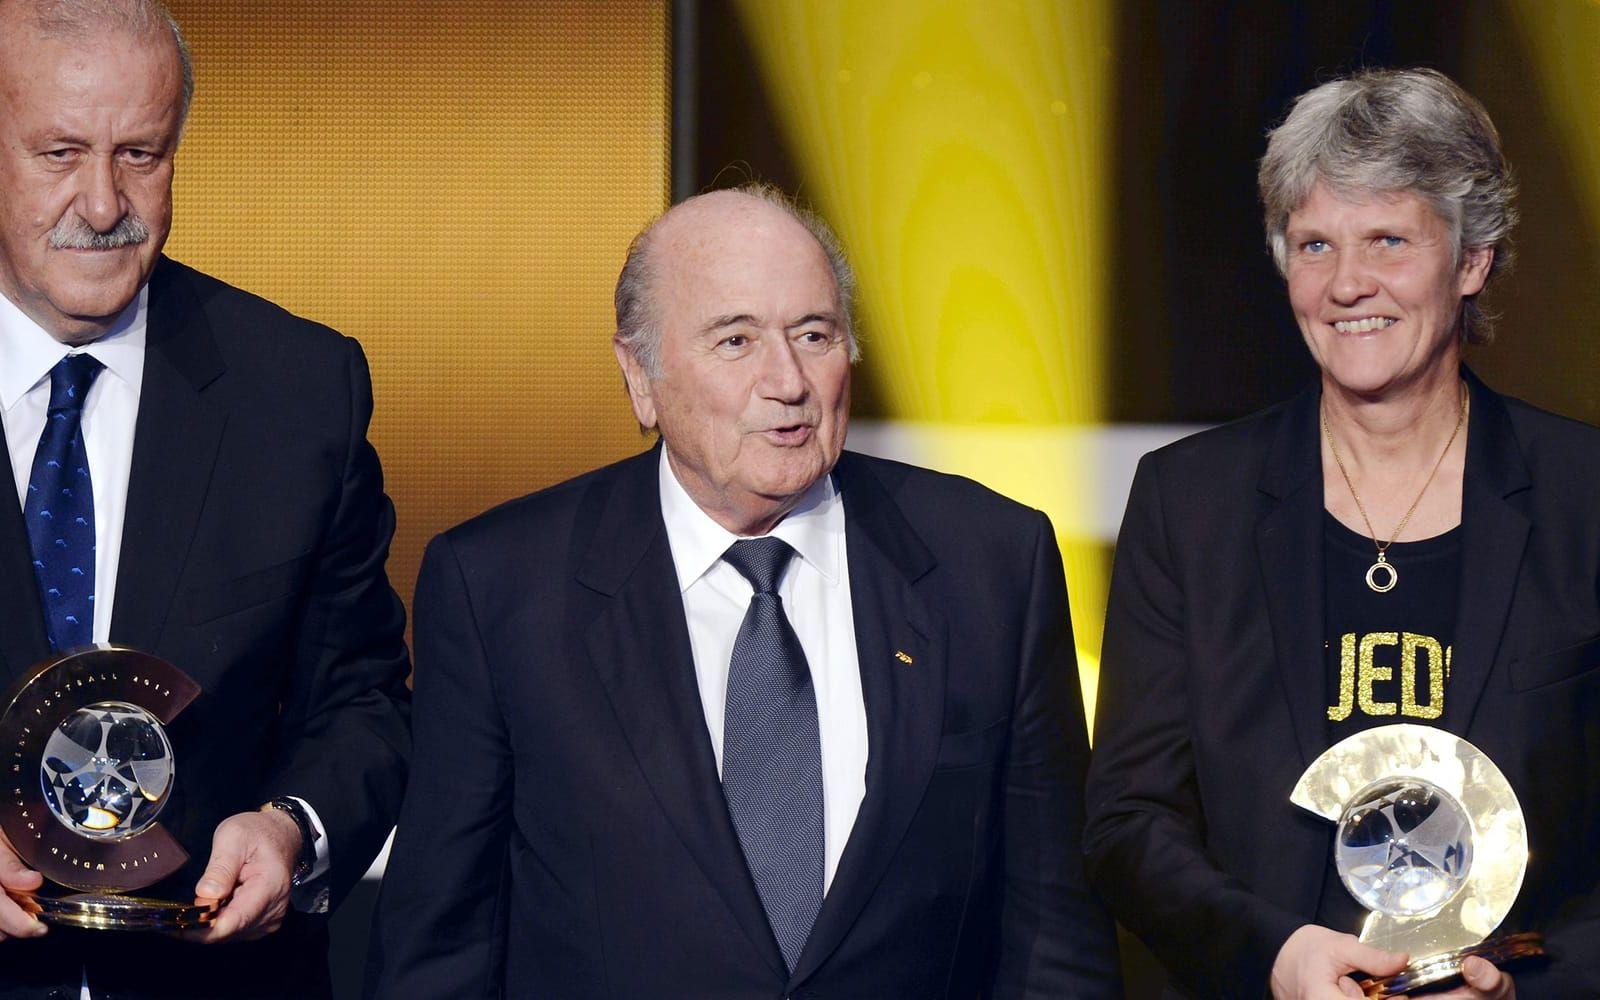 7 januari 2013: Pia Sundhage, flankerad av Vicente del Bosque och Sepp Blatter, belönas med priset för årets bästa damtränare på Fifas årliga gala i Zürich i Schweiz. Foto: TT